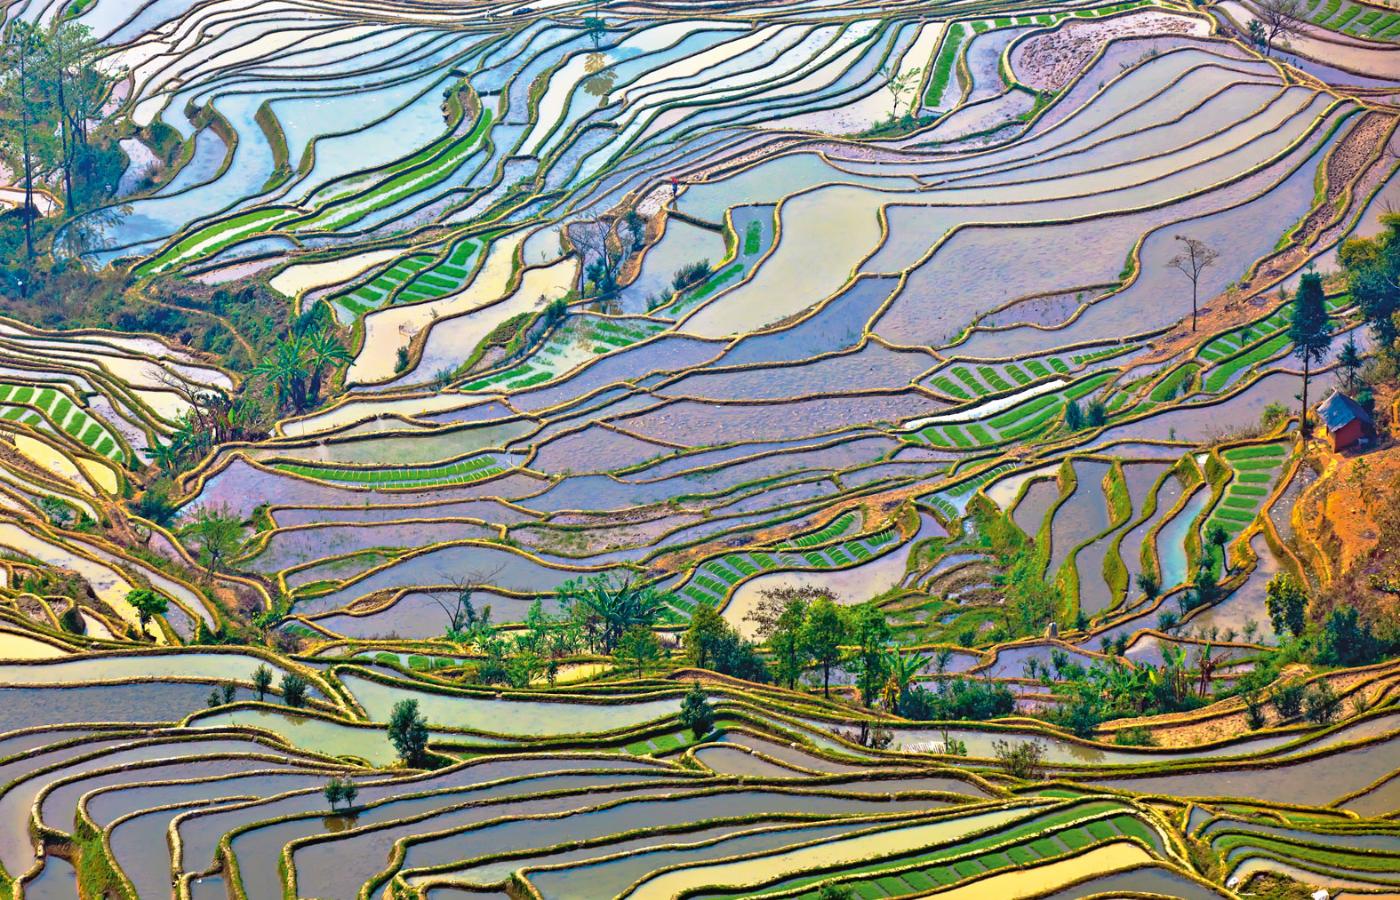 Pola ryżowe w prowincji Yunnan, fotografia współczesna.